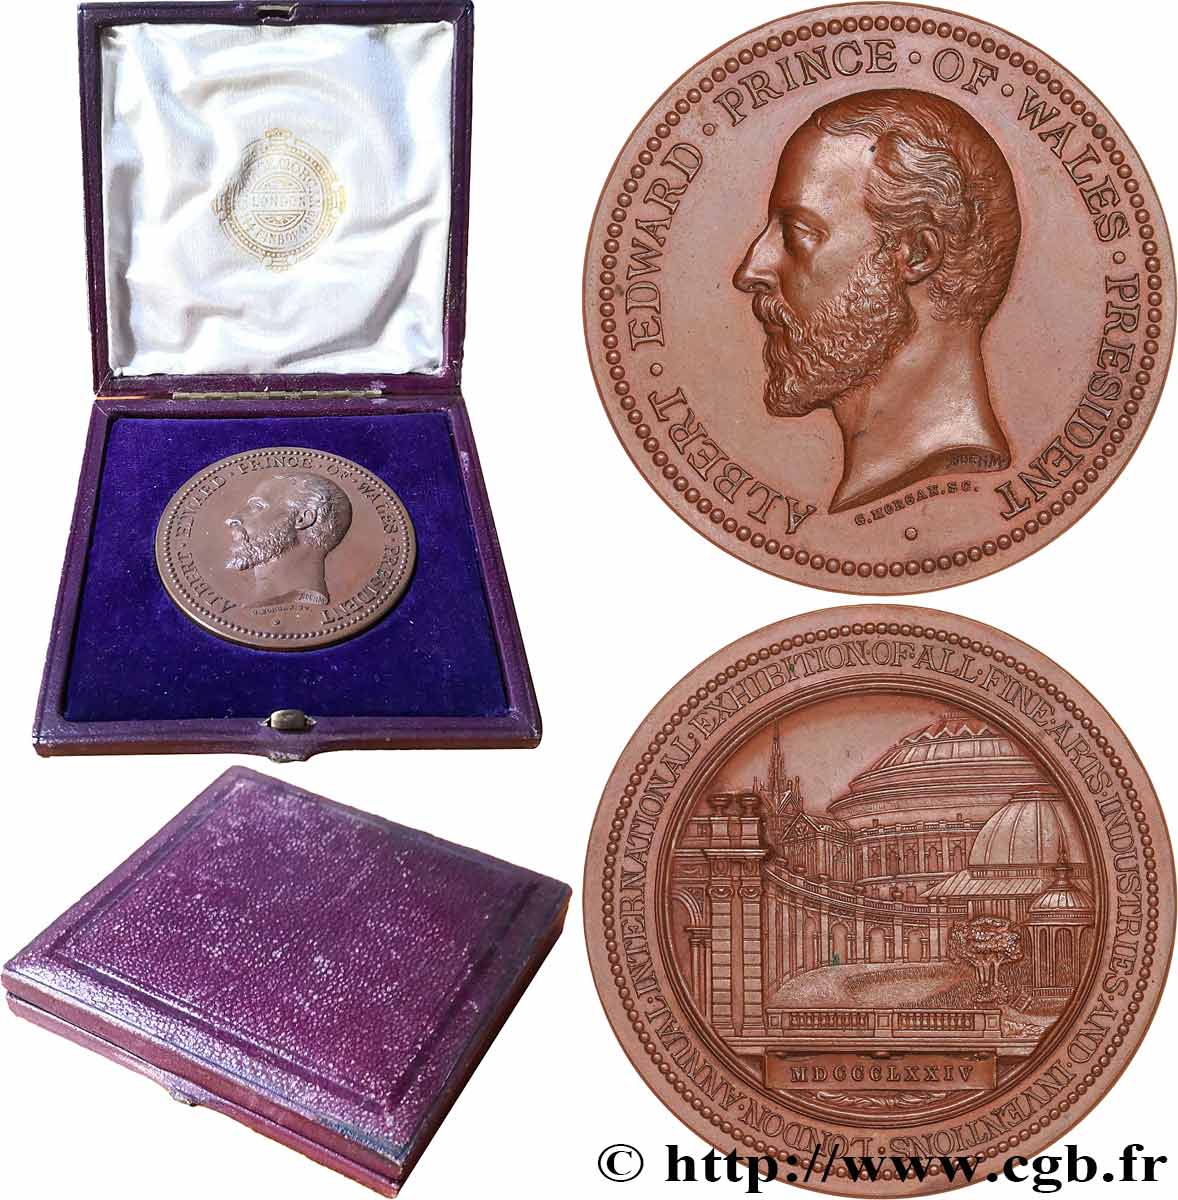 GREAT-BRITAIN - VICTORIA Médaille, Prince Albert, Exposition internationale des arts et industrie AU